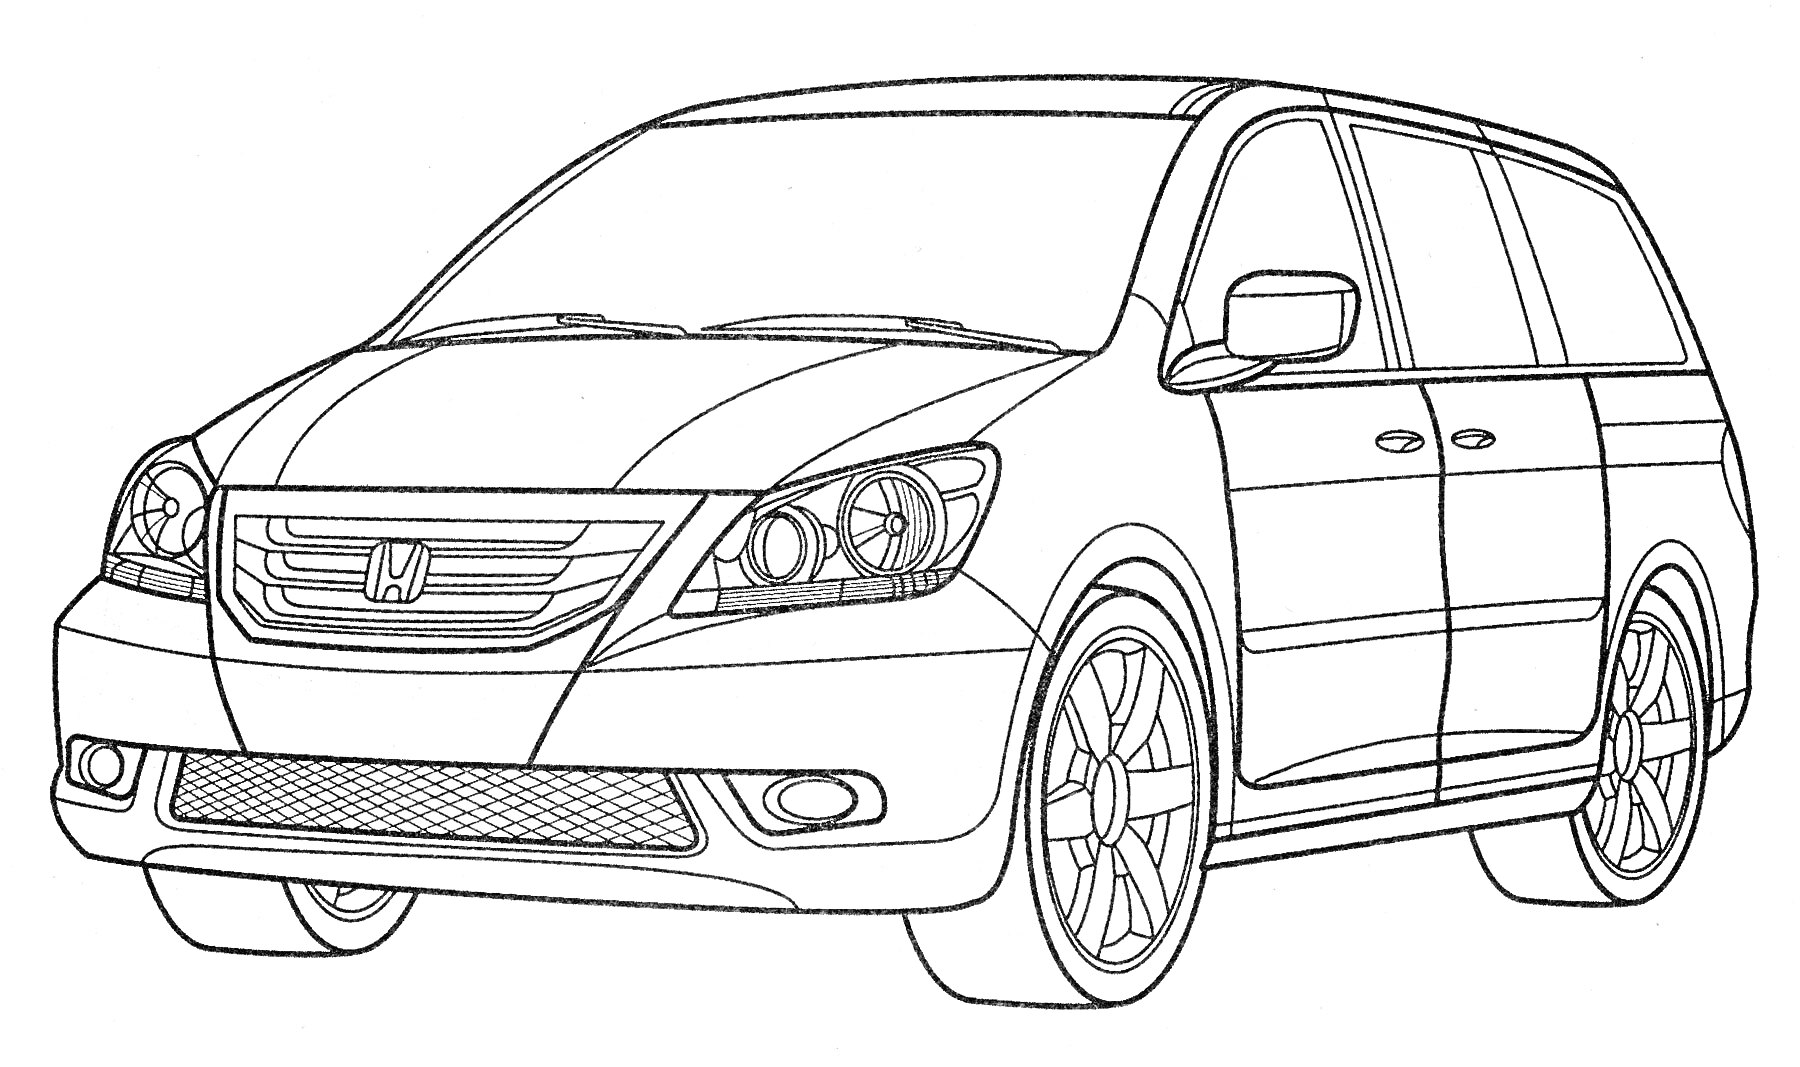 Раскраска Honda минивэн с видимыми передними фарами, решеткой радиатора, боковыми зеркалами и колесами